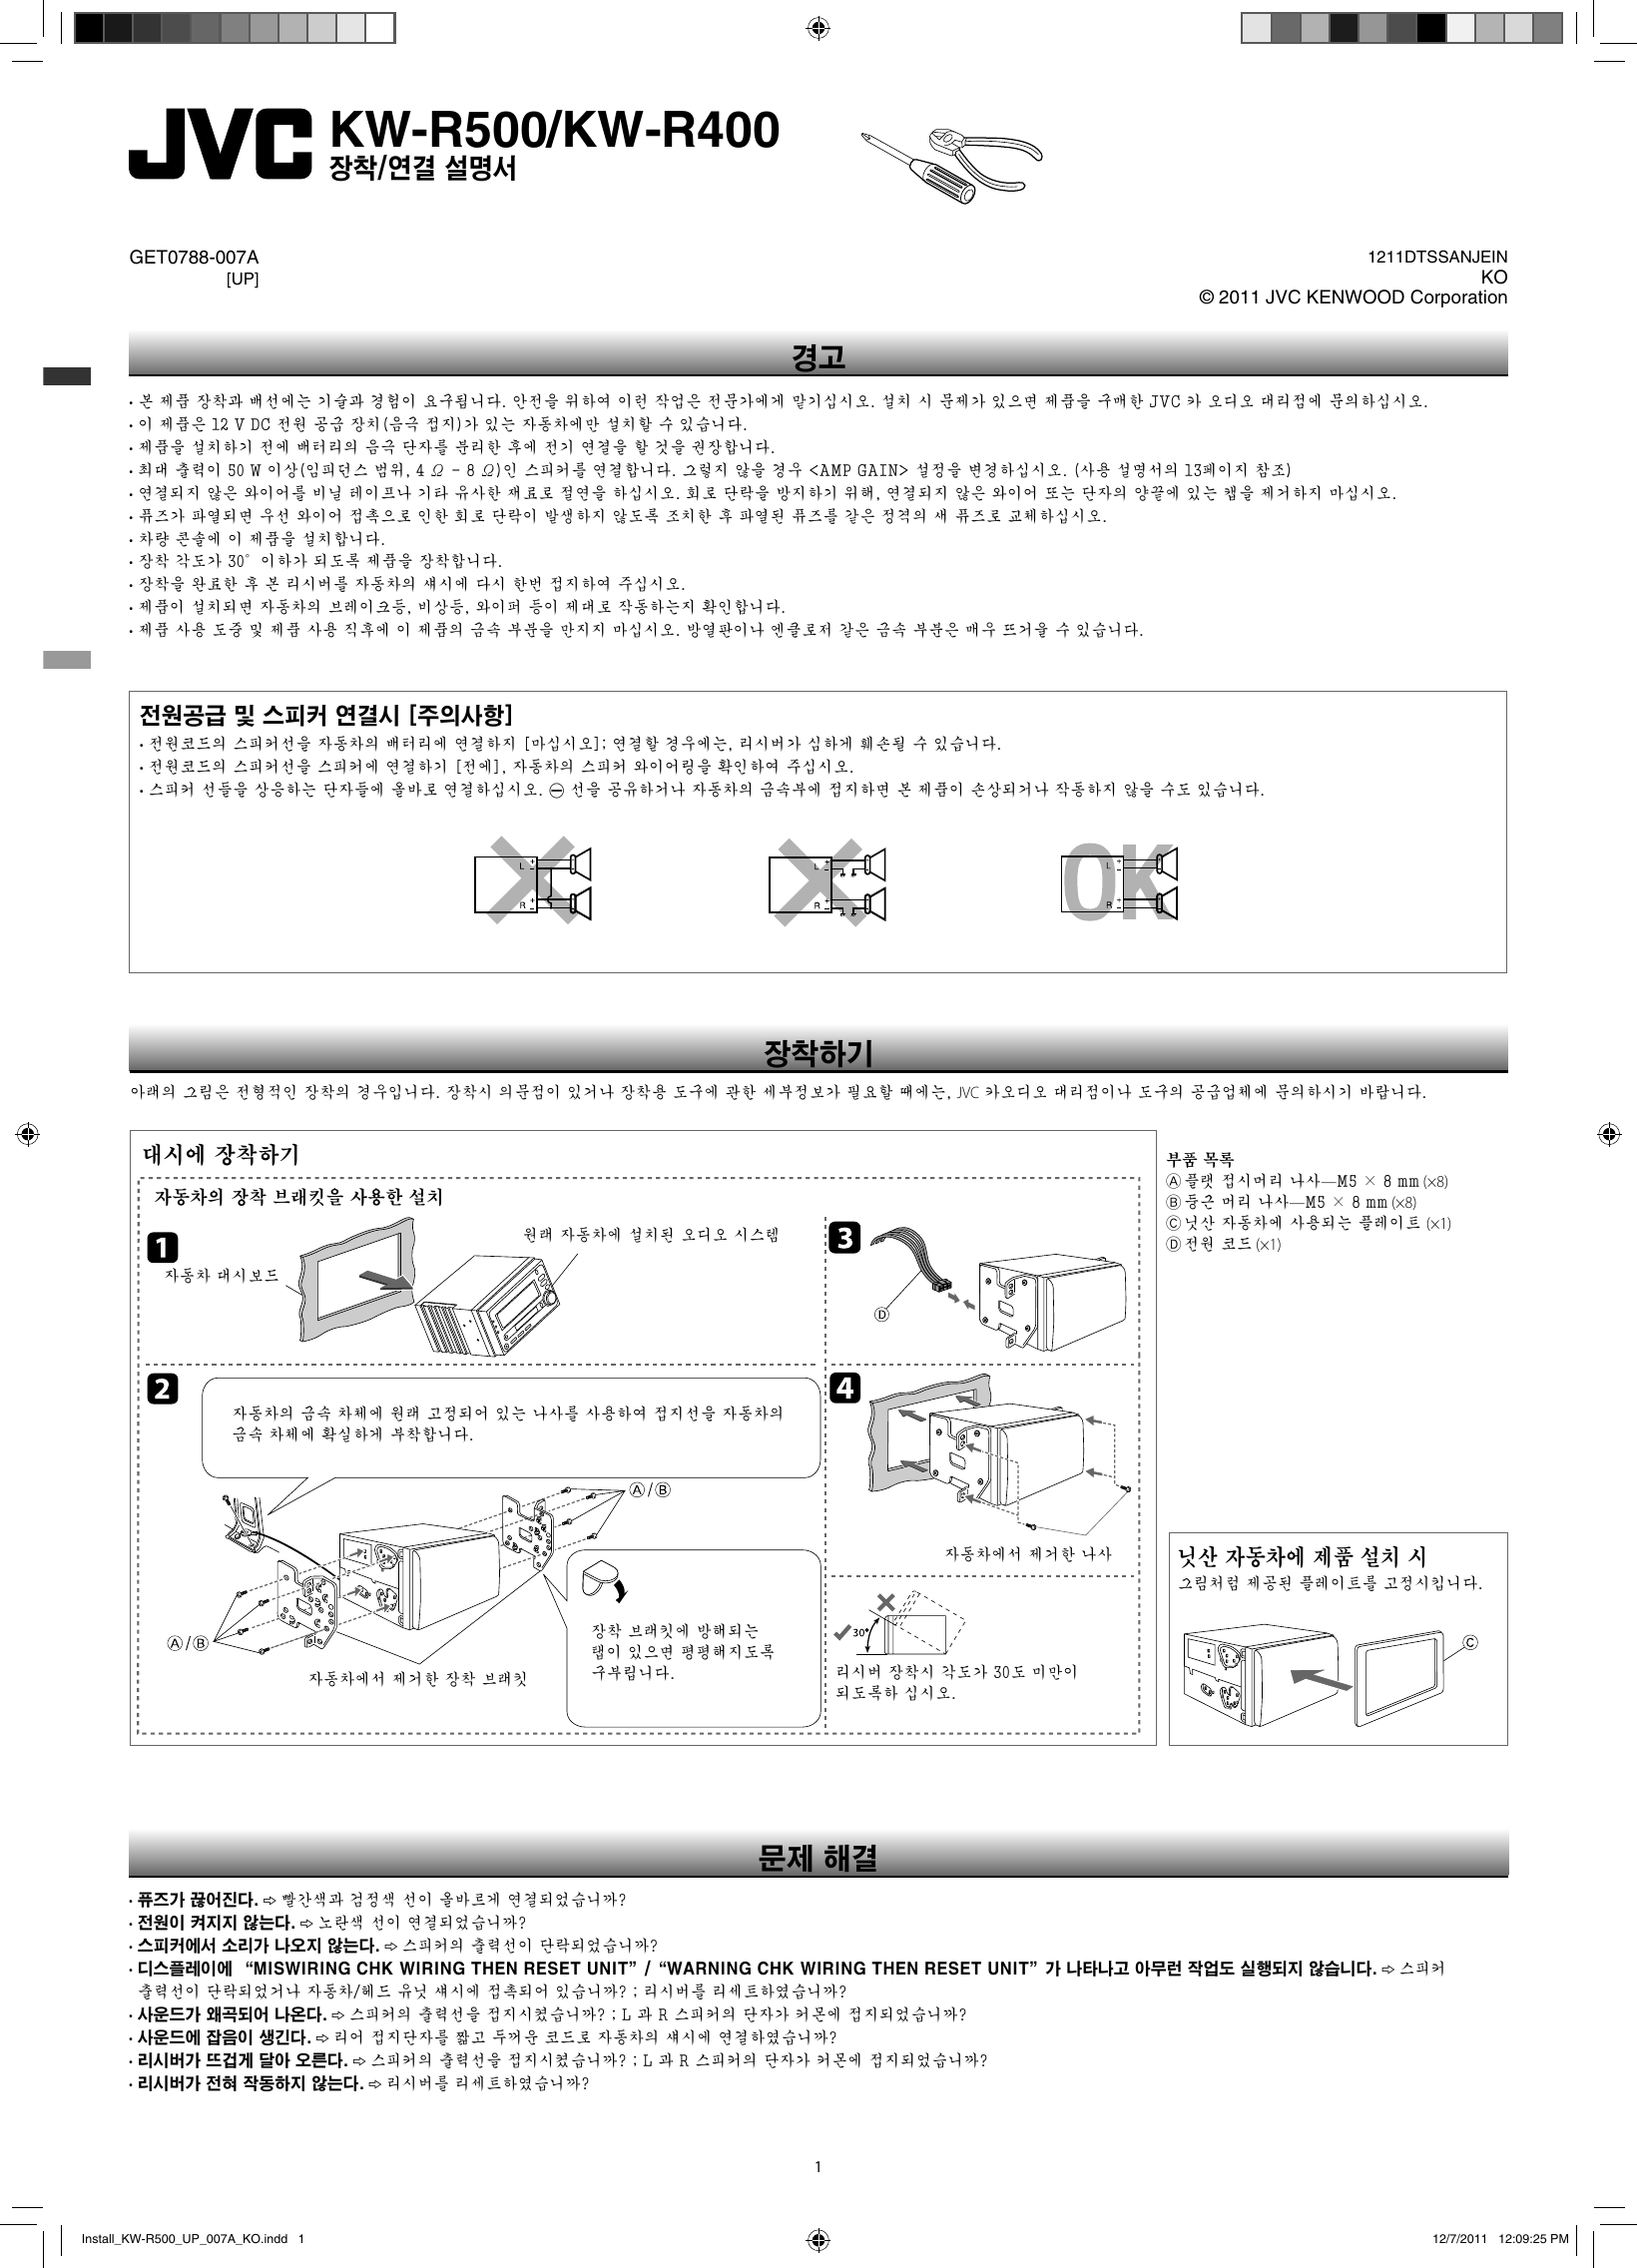 Page 1 of 2 - JVC KW-R500UP KW-R500/KW-R400 User Manual  GET0788-007A